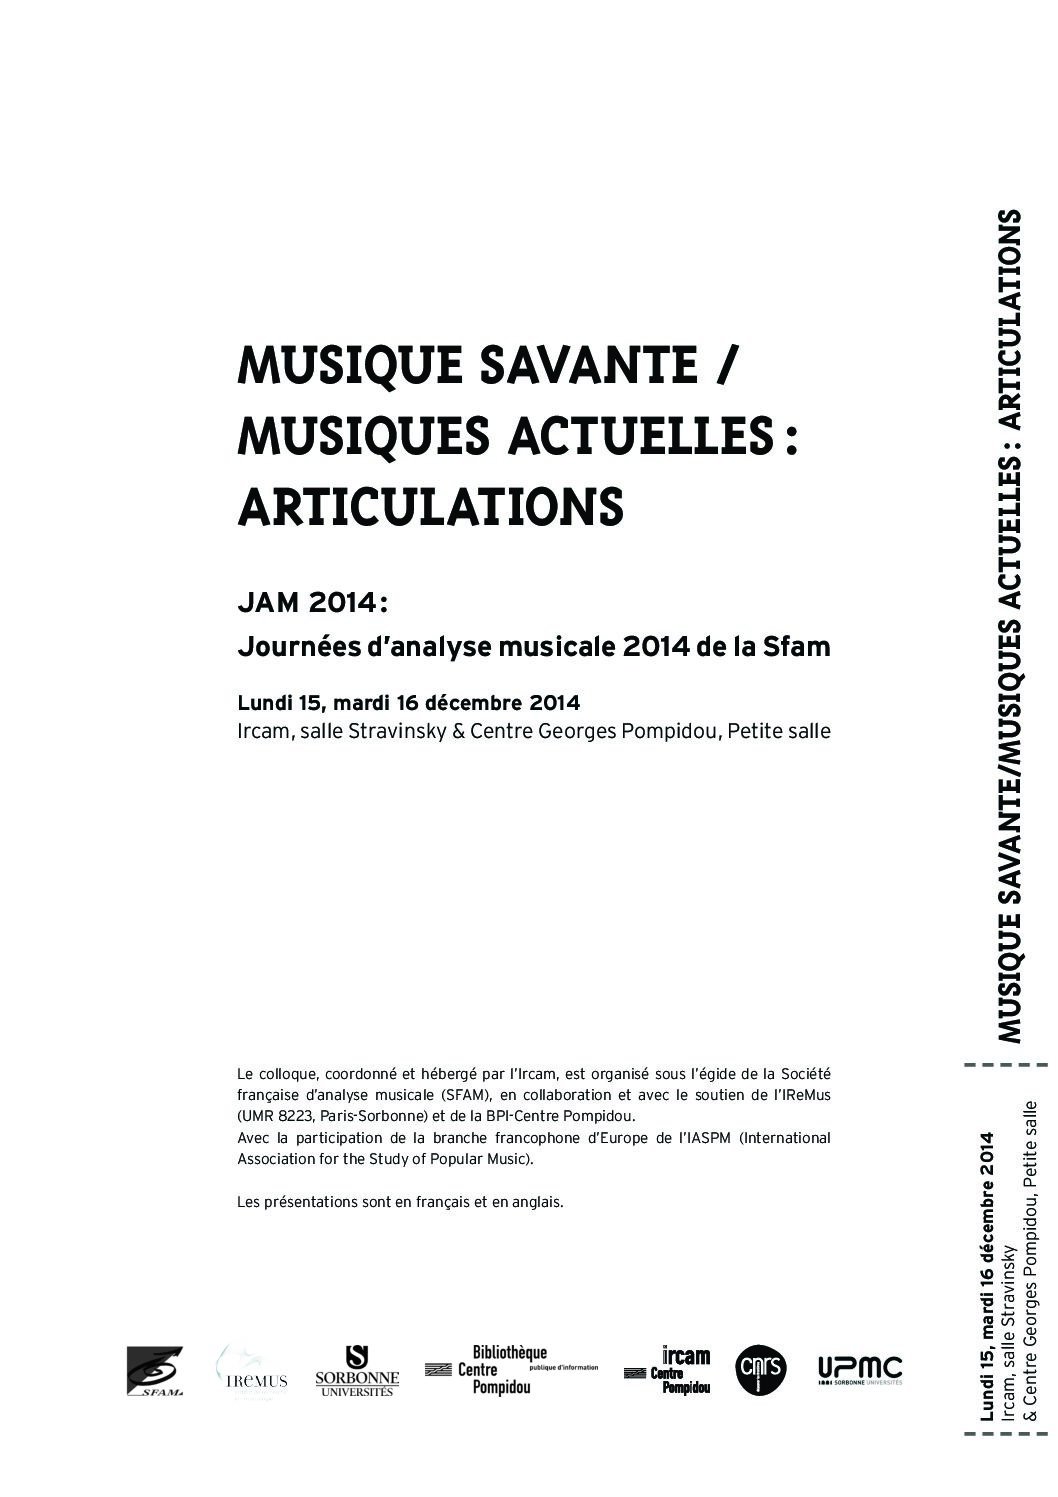 You are currently viewing JAM 2014 — Musique savante / musiques actuelles : articulations (Ircam / Maison de la recherche de l’Université Paris-Sorbonne)